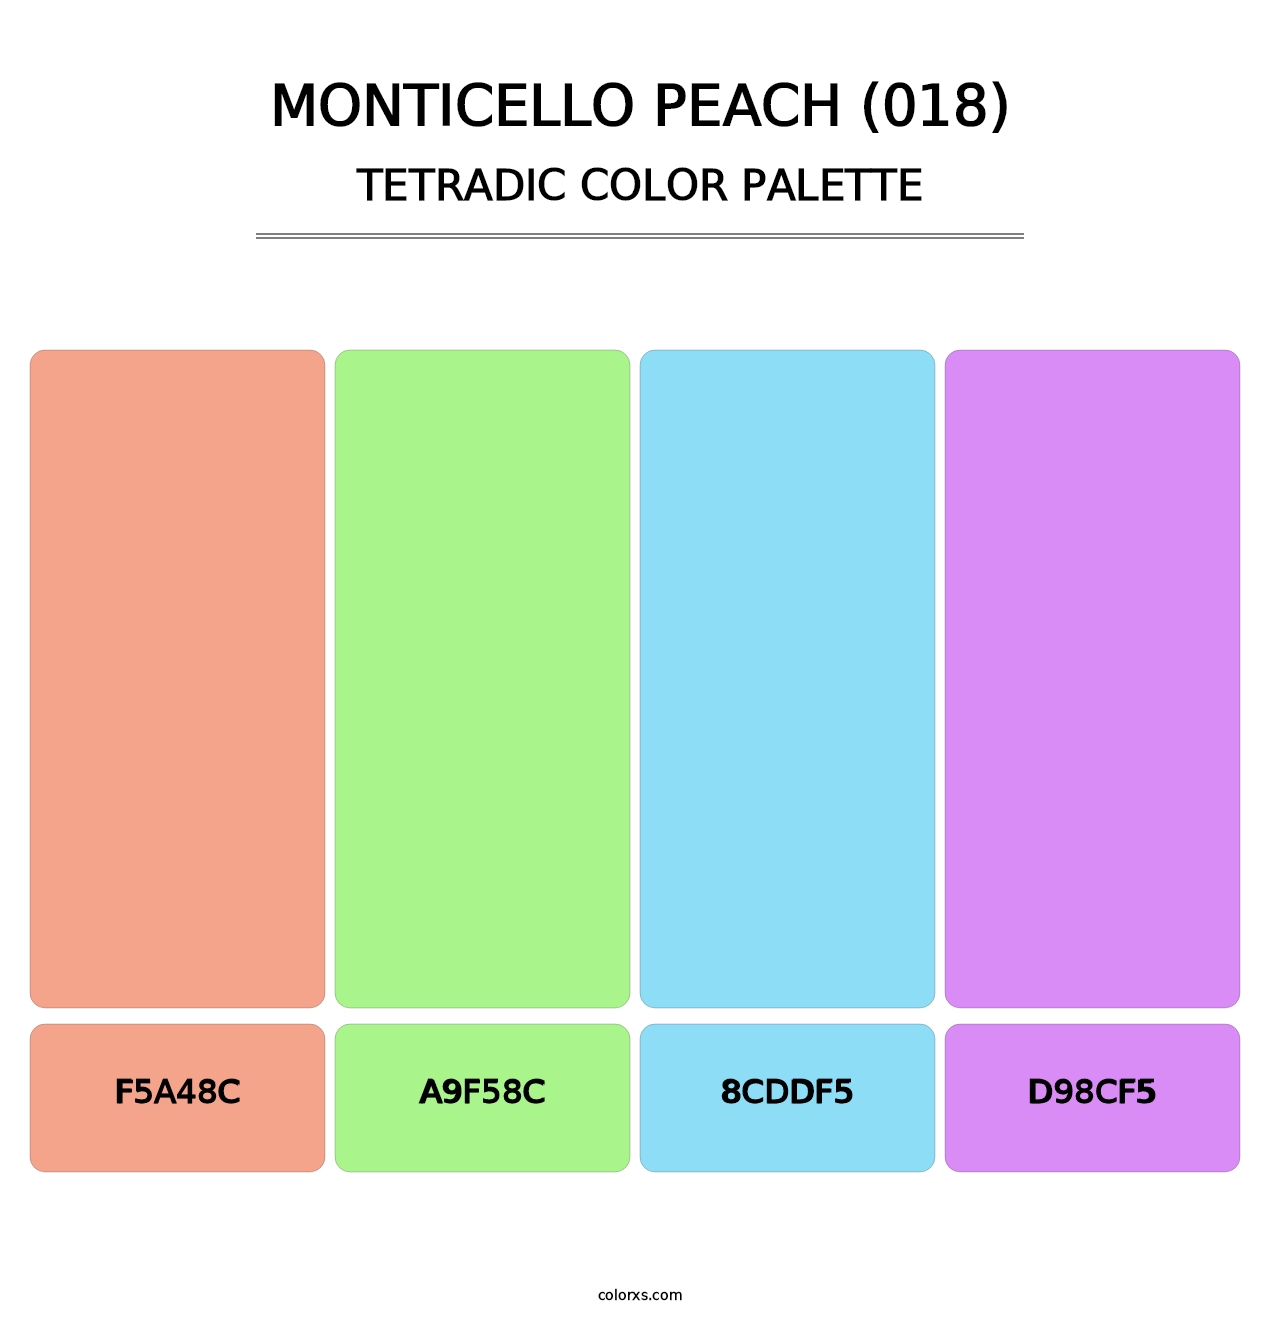 Monticello Peach (018) - Tetradic Color Palette